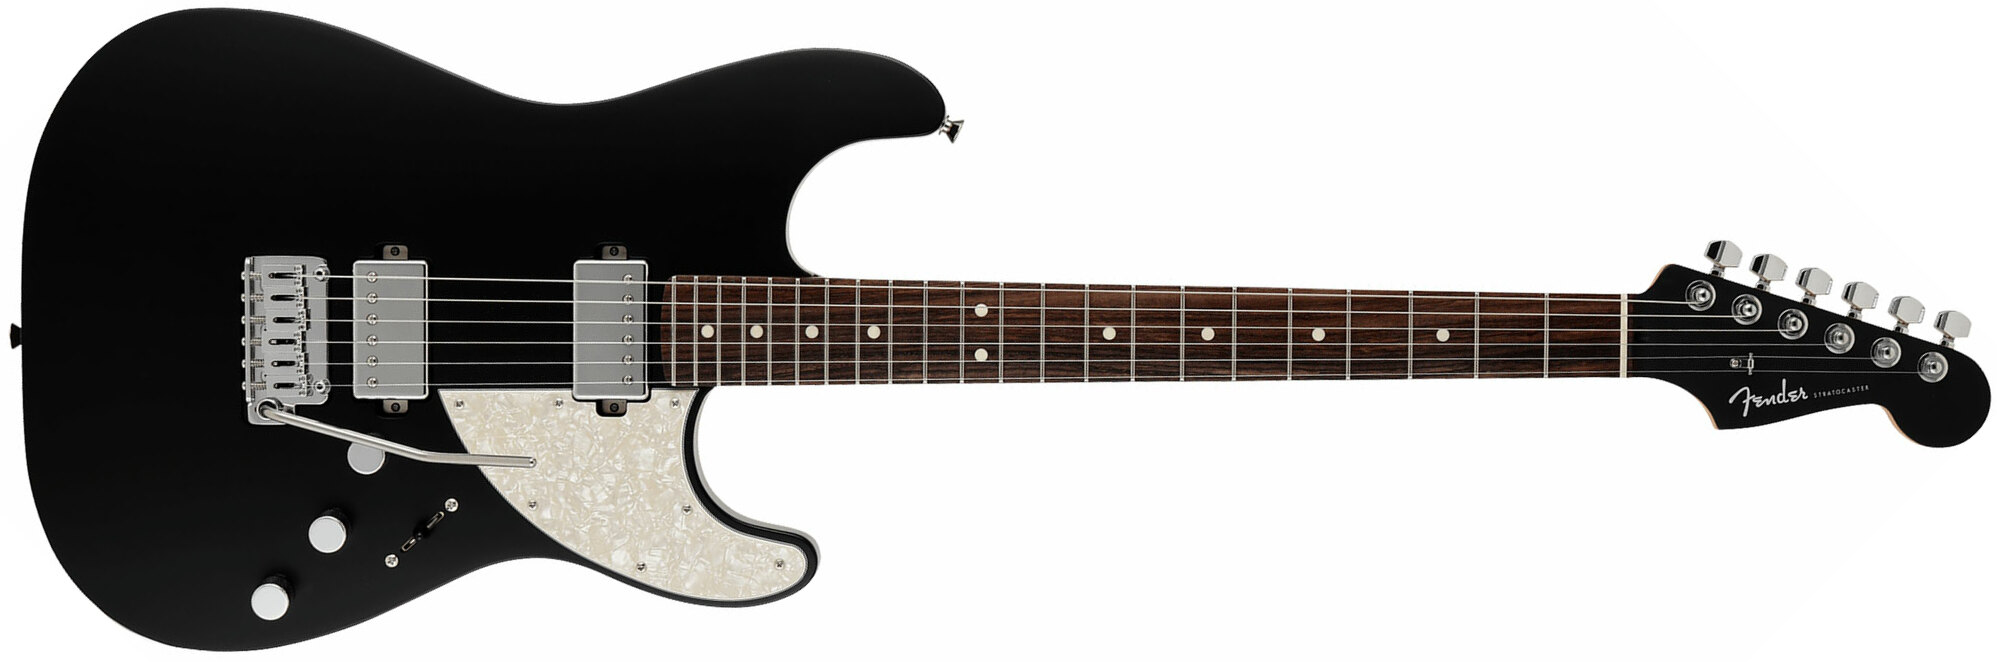 Fender Strat Elemental Mij Jap 2h Trem Rw - Stone Black - Guitare Électrique Forme Str - Main picture